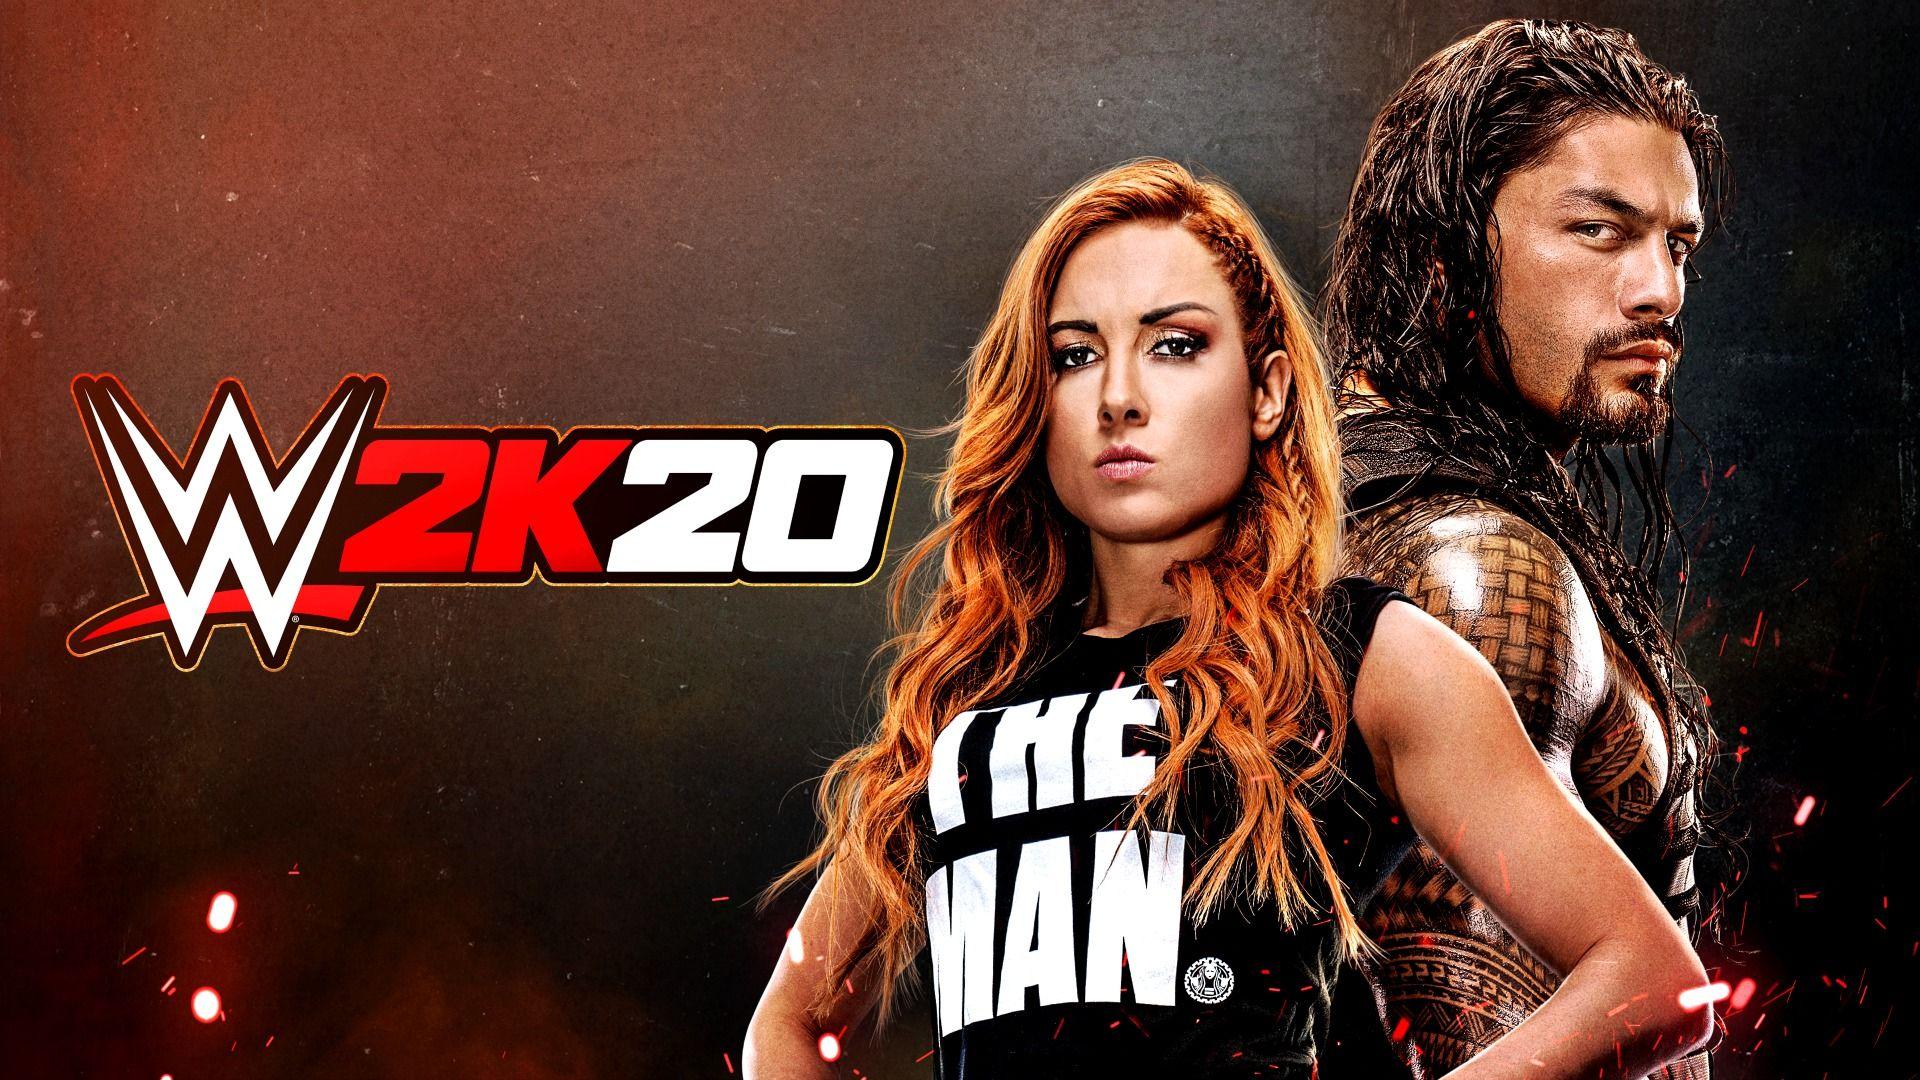 WWE 2K20 Cover Superstars Becky Lynch & Roman Reigns Usher